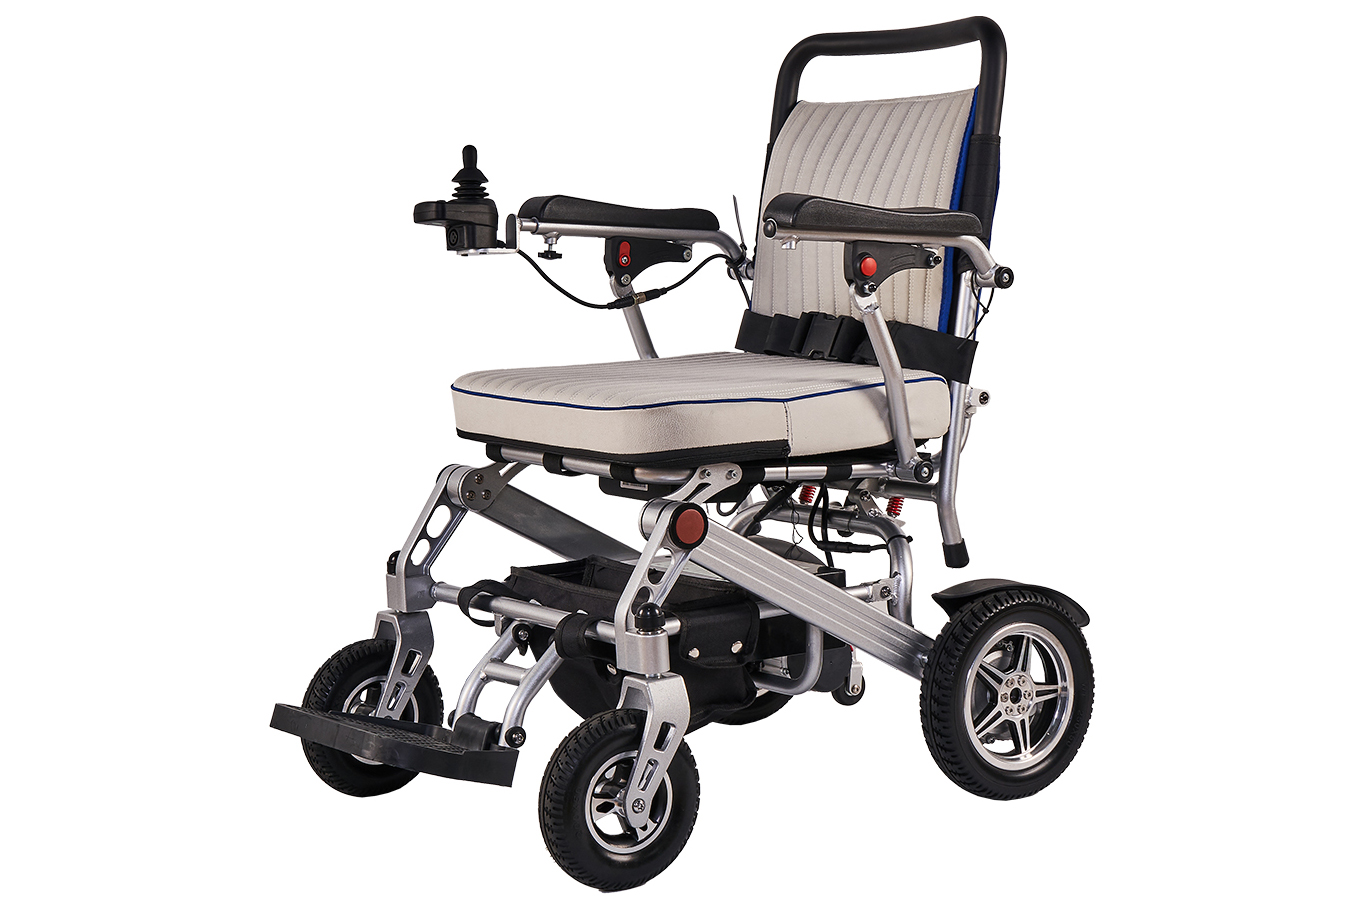 Jeste li ikada vidjeli takva električna invalidska kolica? – Otkrivanje budućnosti sa sklopivim laganim električnim invalidskim kolicima